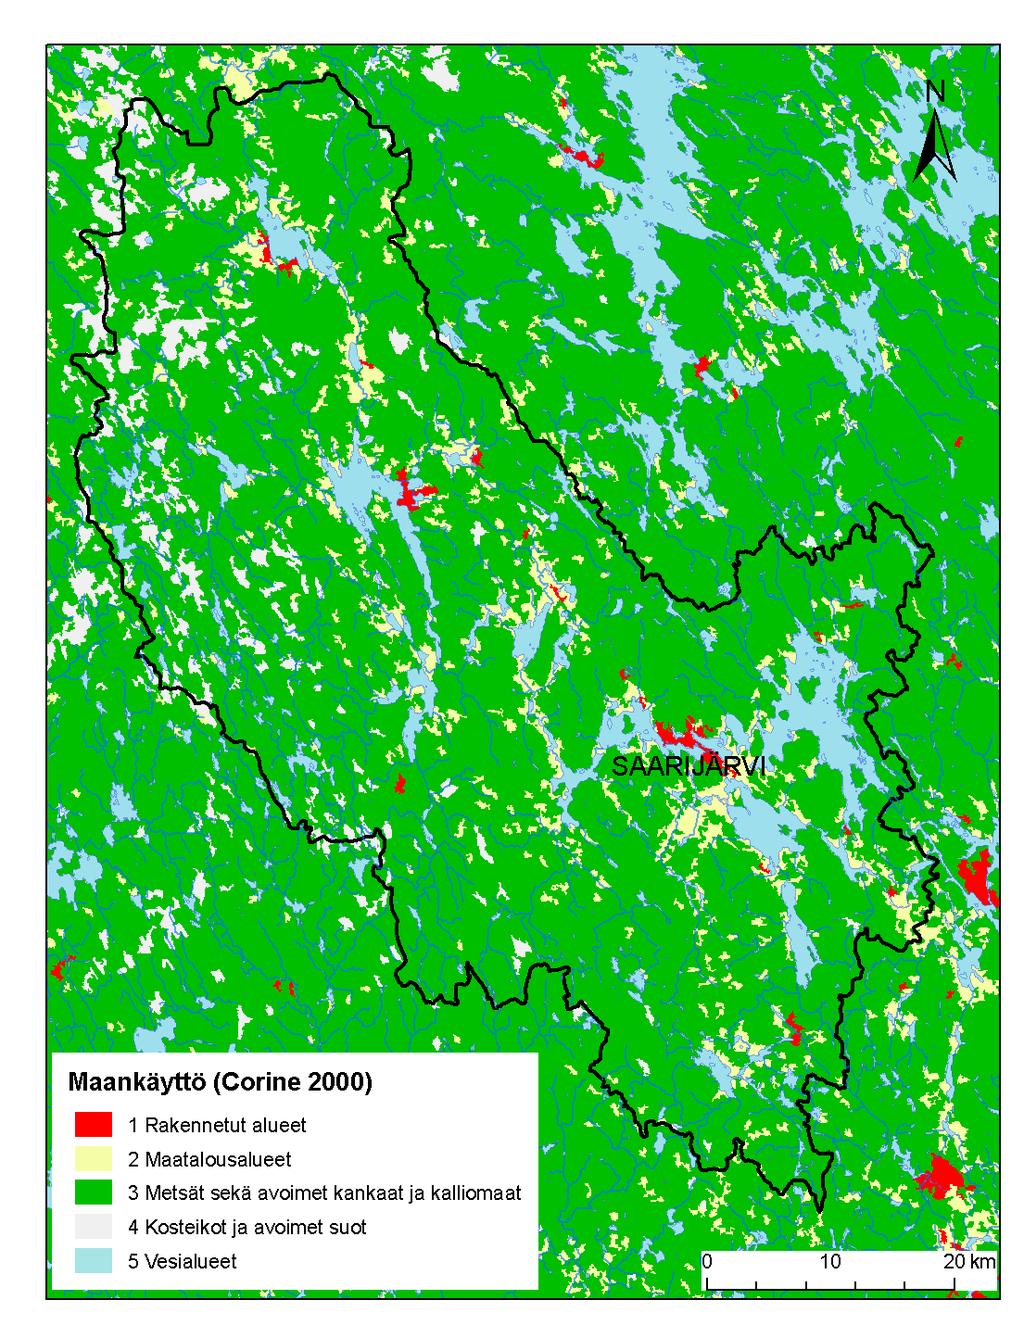 SYKE, EEA 2.2.6 Saarijärvi-leden Saarijärvi-leden ligger huvudsakligen inom sex kommuners område i landskapet Mellersta Finland.